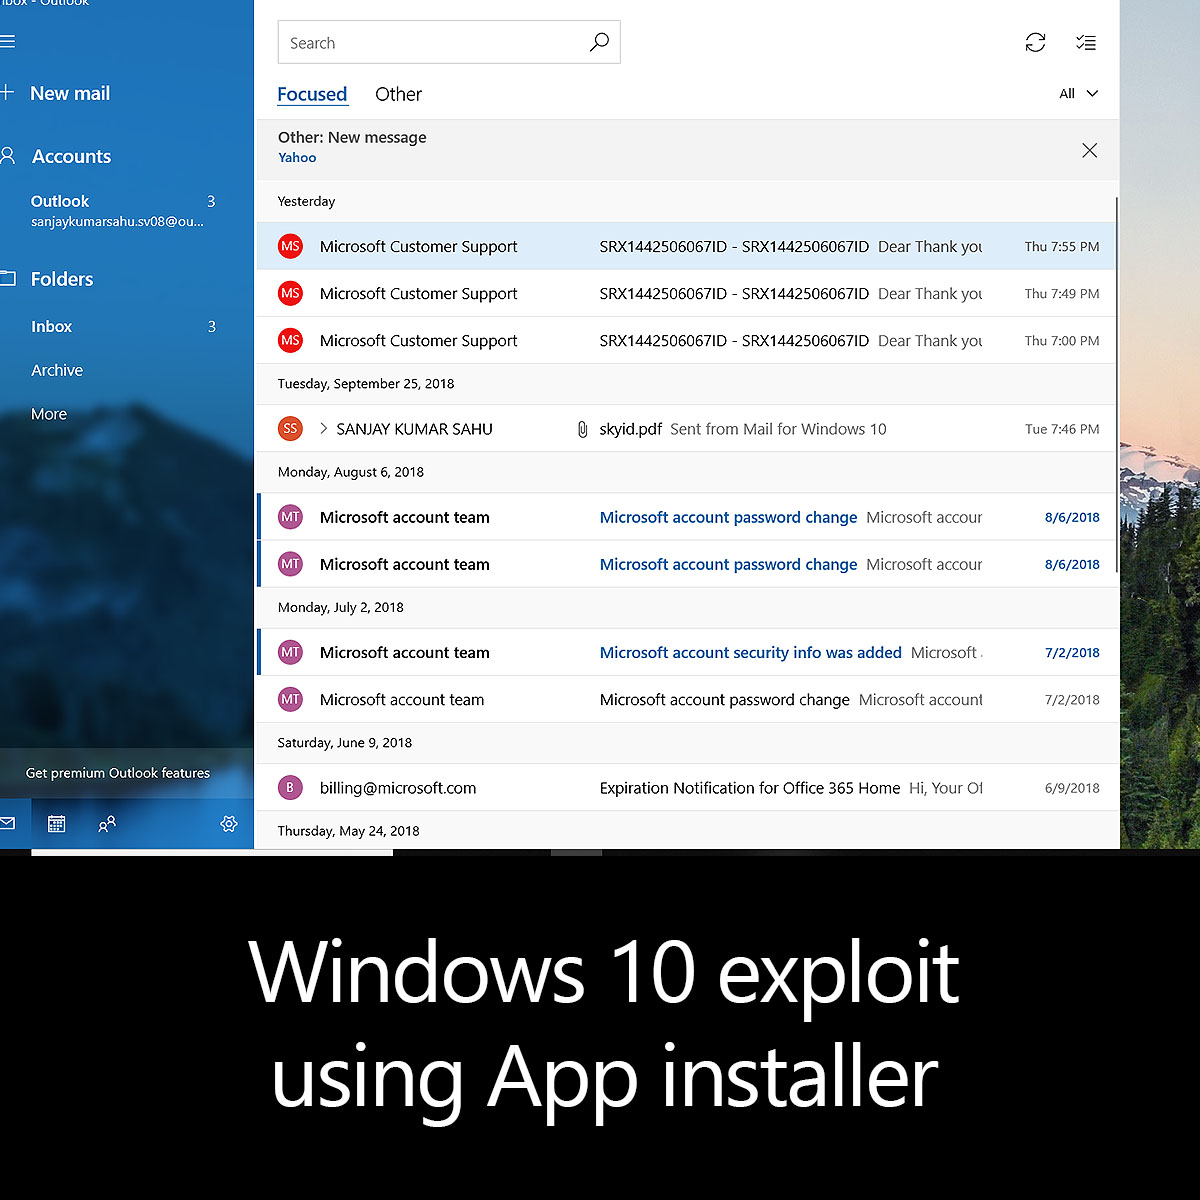 Windows 10 exploit using App installer